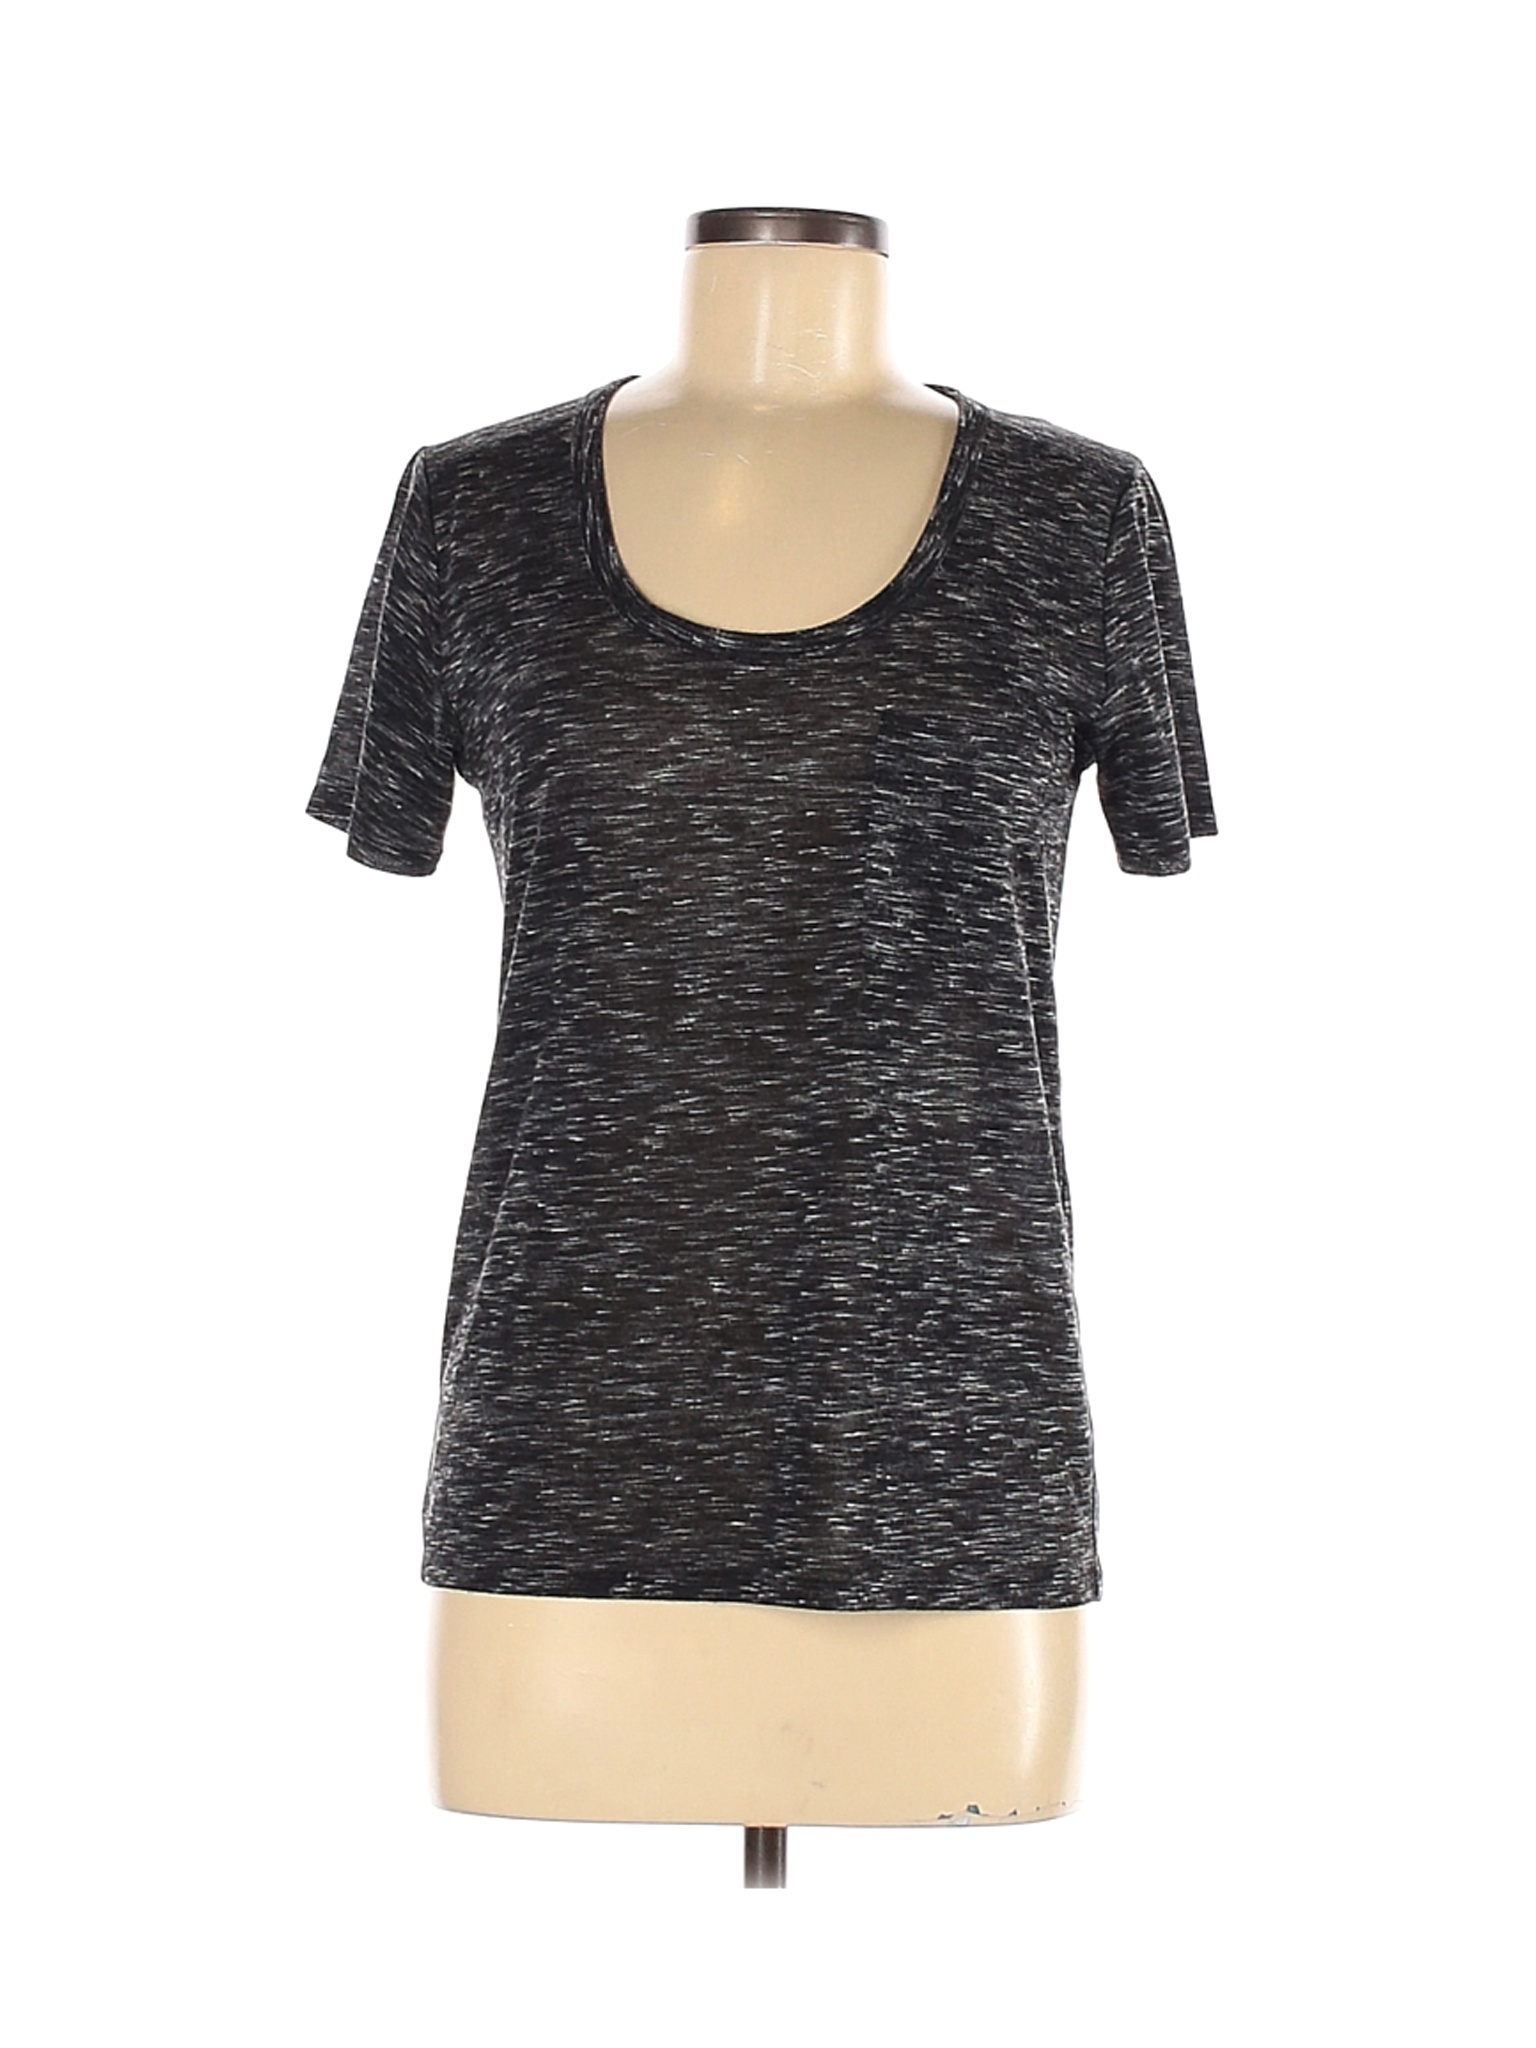 Club Monaco Women Black Short Sleeve T-Shirt M | eBay